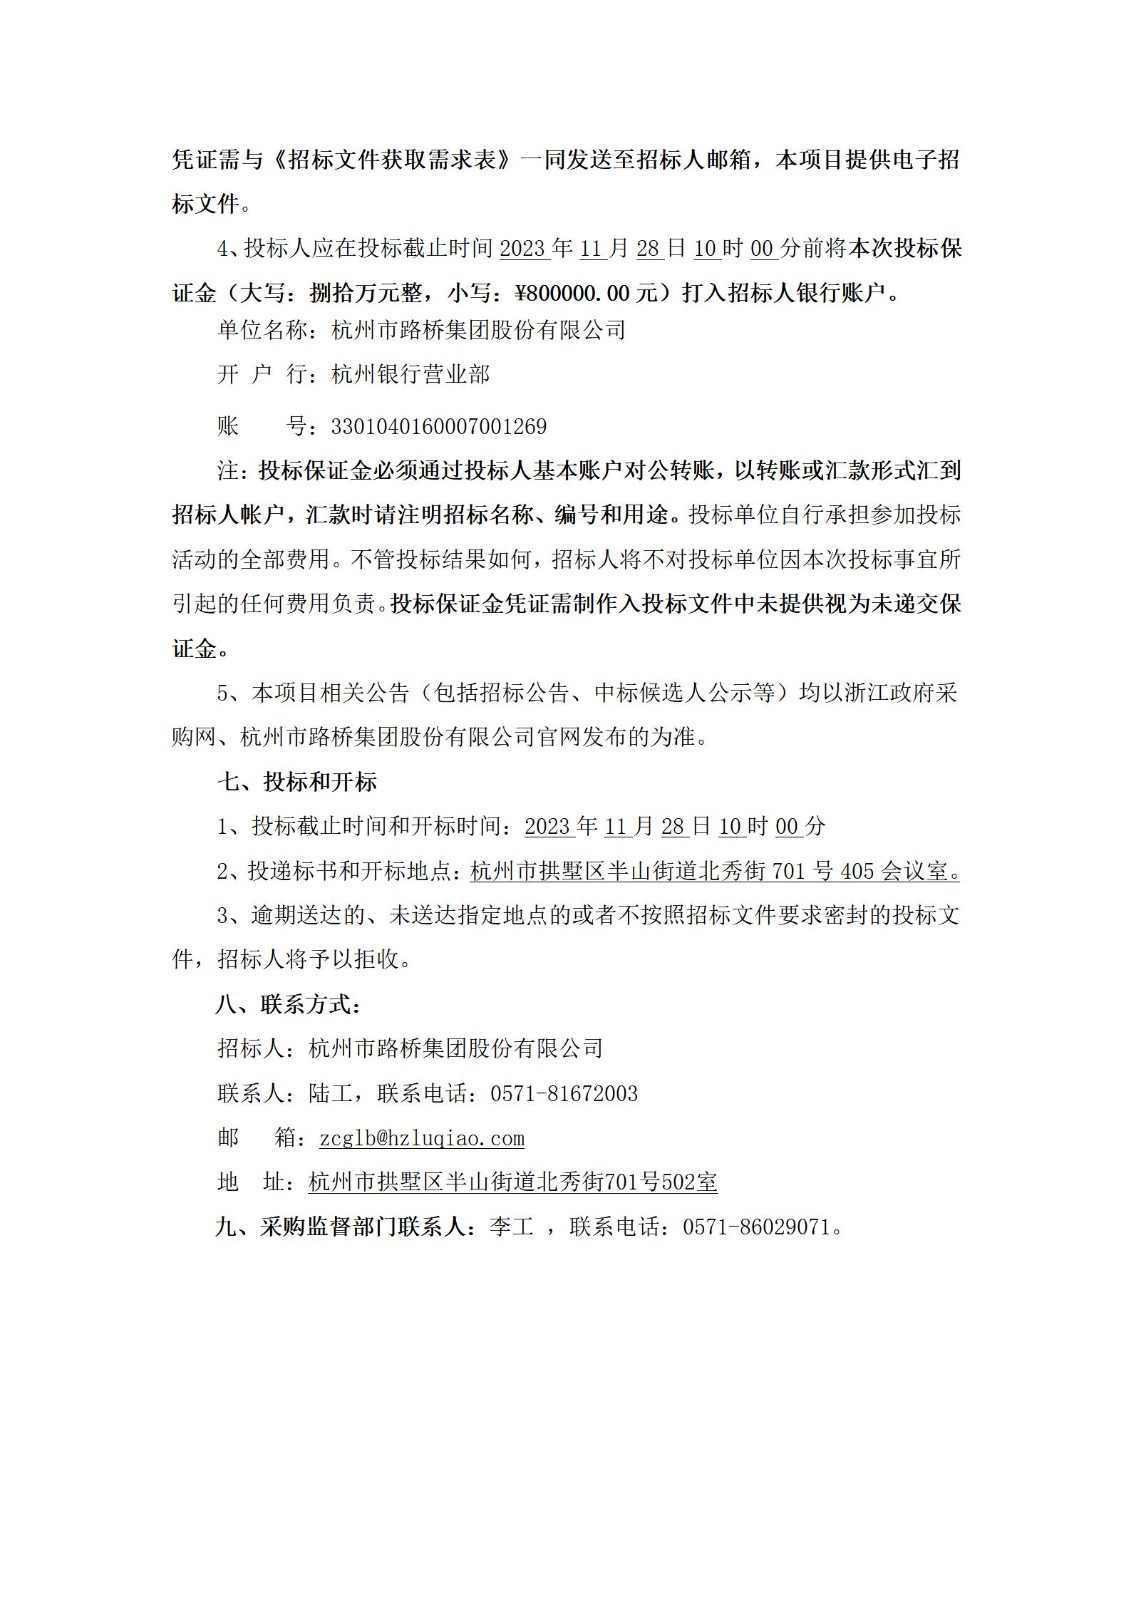 招标公告：杭州市路桥集团股份有限公司2023年-2024年青混合料生产用沥青招标项目_02.jpg